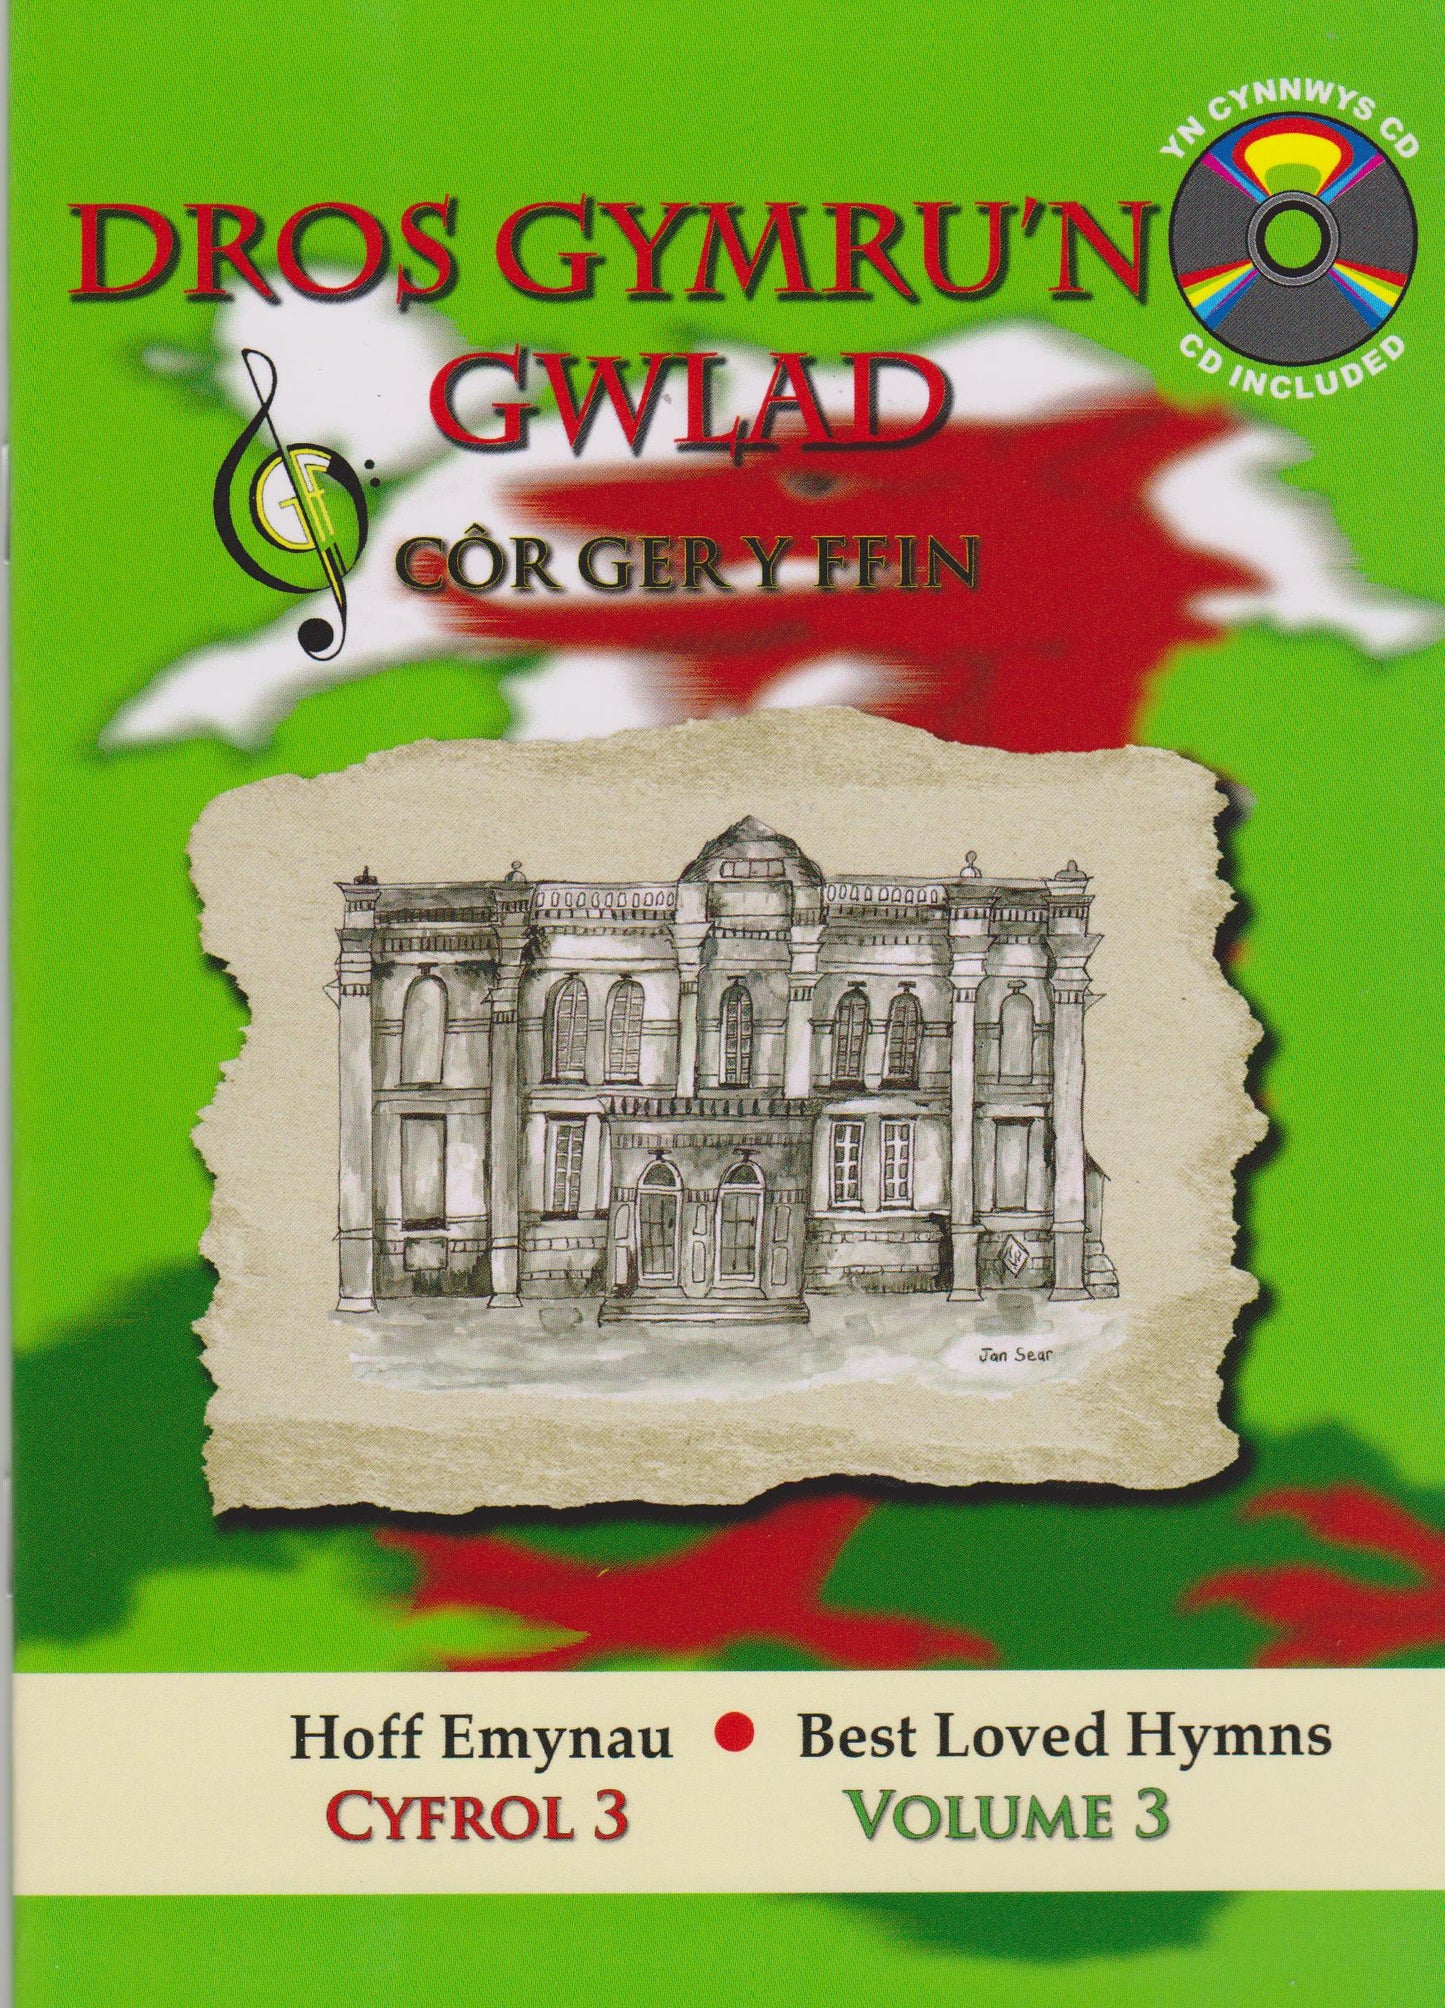 Dros Gymru'n Gwlad - Hoff Emynau Cymru / Favourite Welsh Hymns